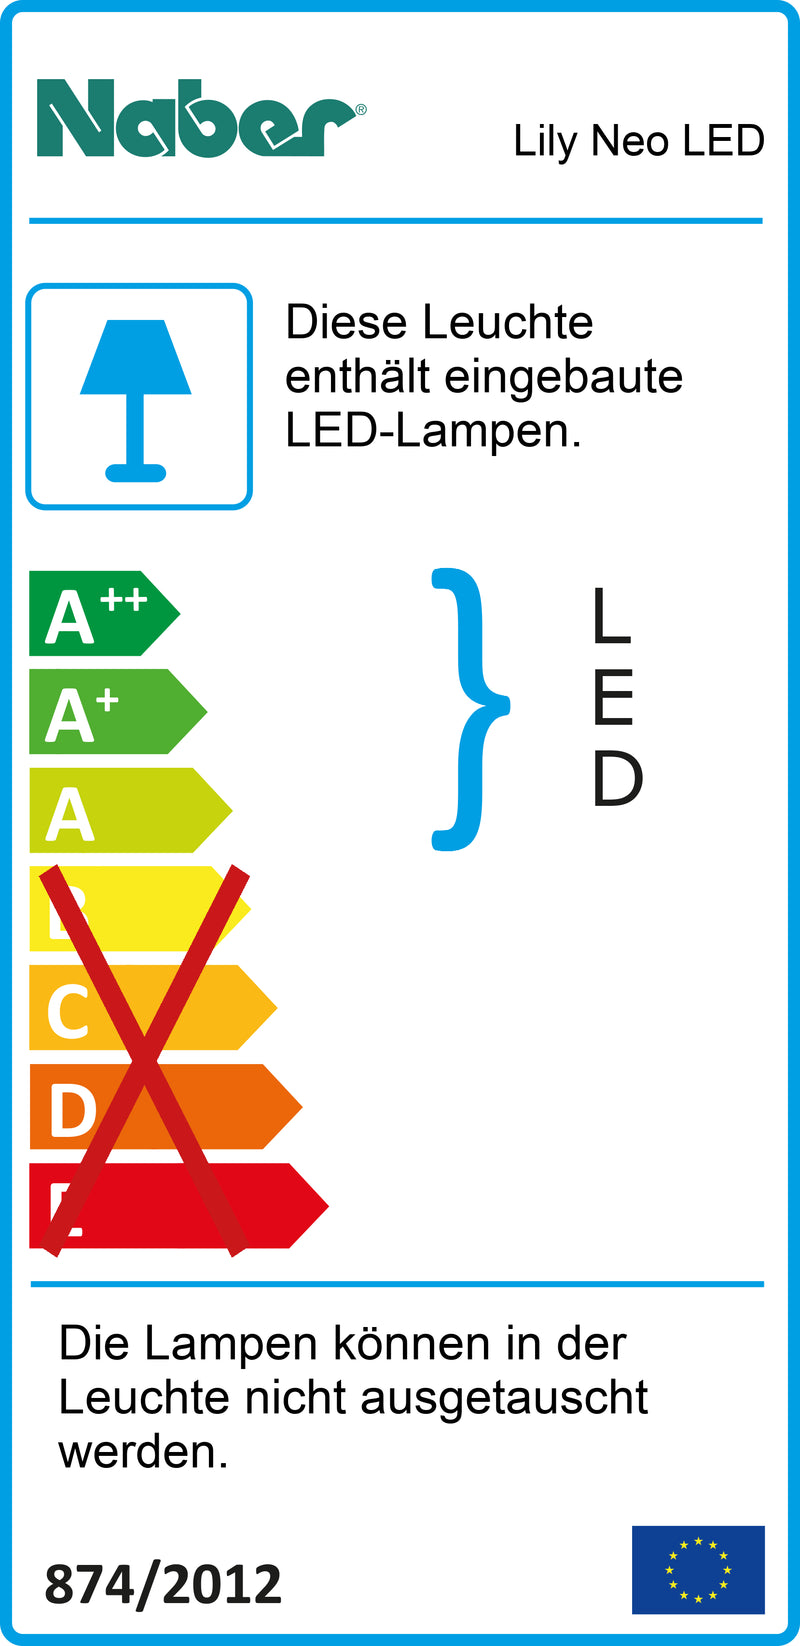 E-Label zu Zeichnung zu Lily Neo LED als Variante L 350 mm, 6 W, edelstahlfarbig von Naber GmbH in der Kategorie Lichttechnik in Österreich auf conceptshop.at